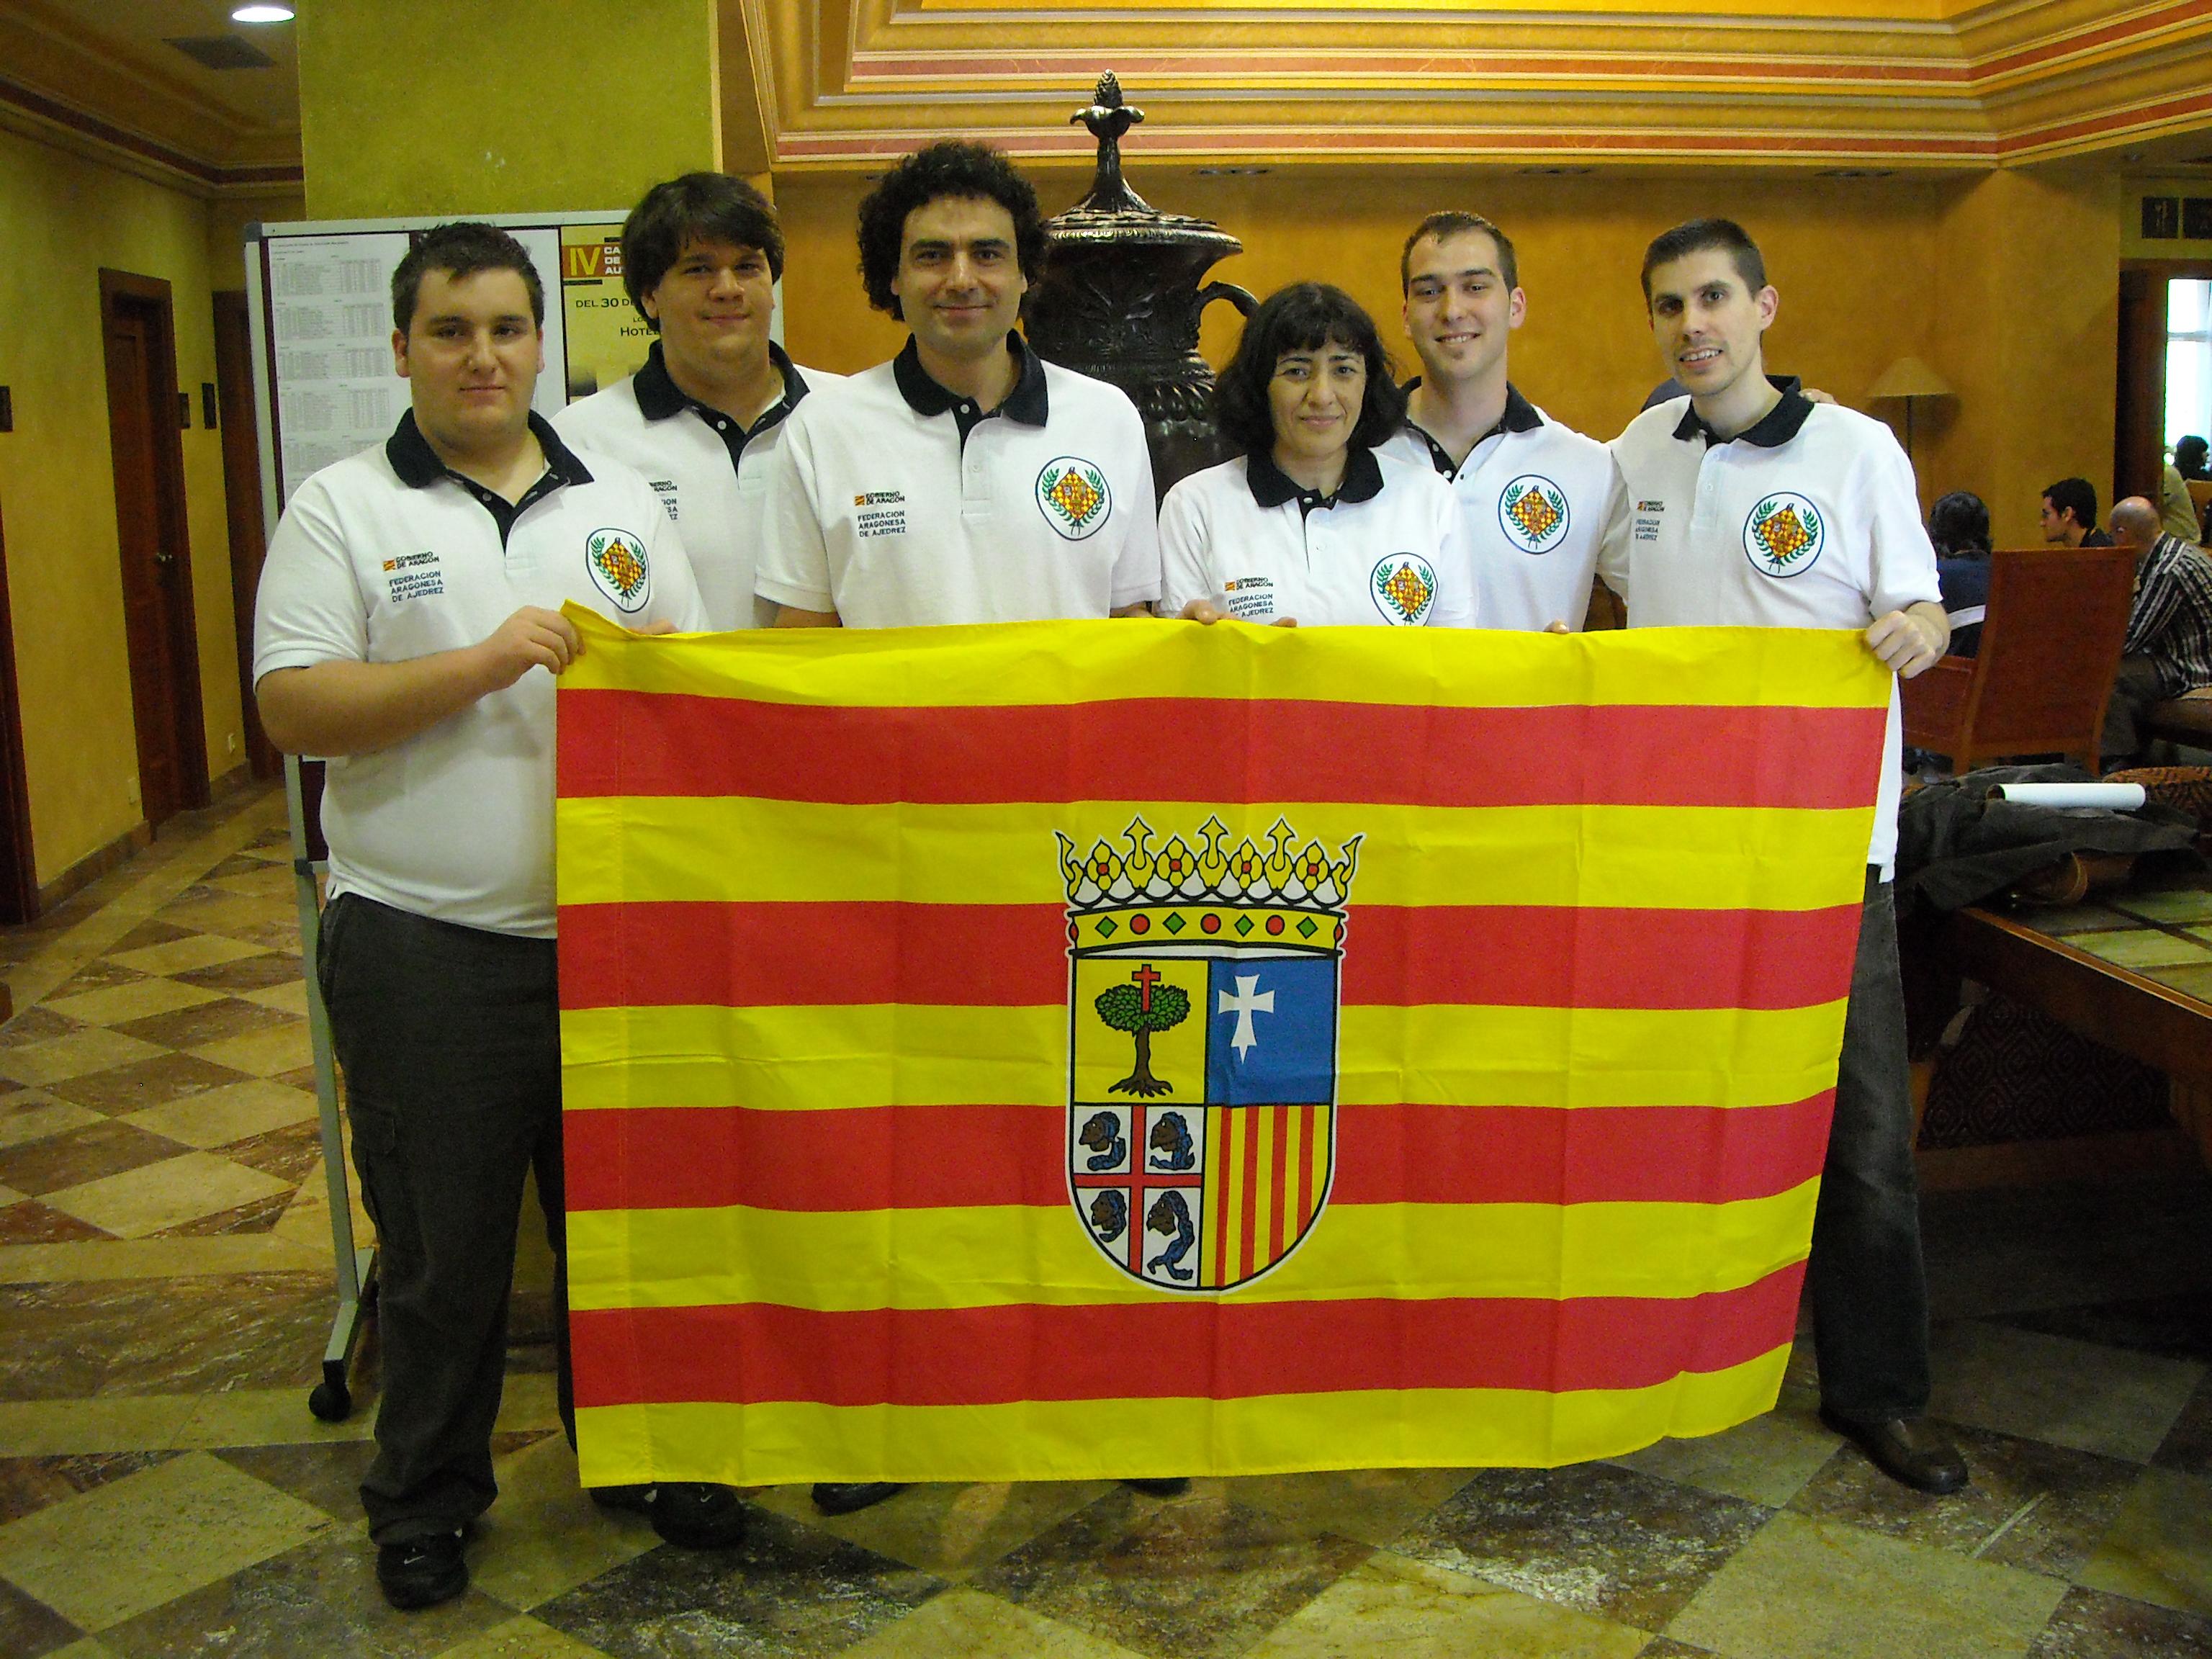 Aragón SubCampeón Autonómico 2009